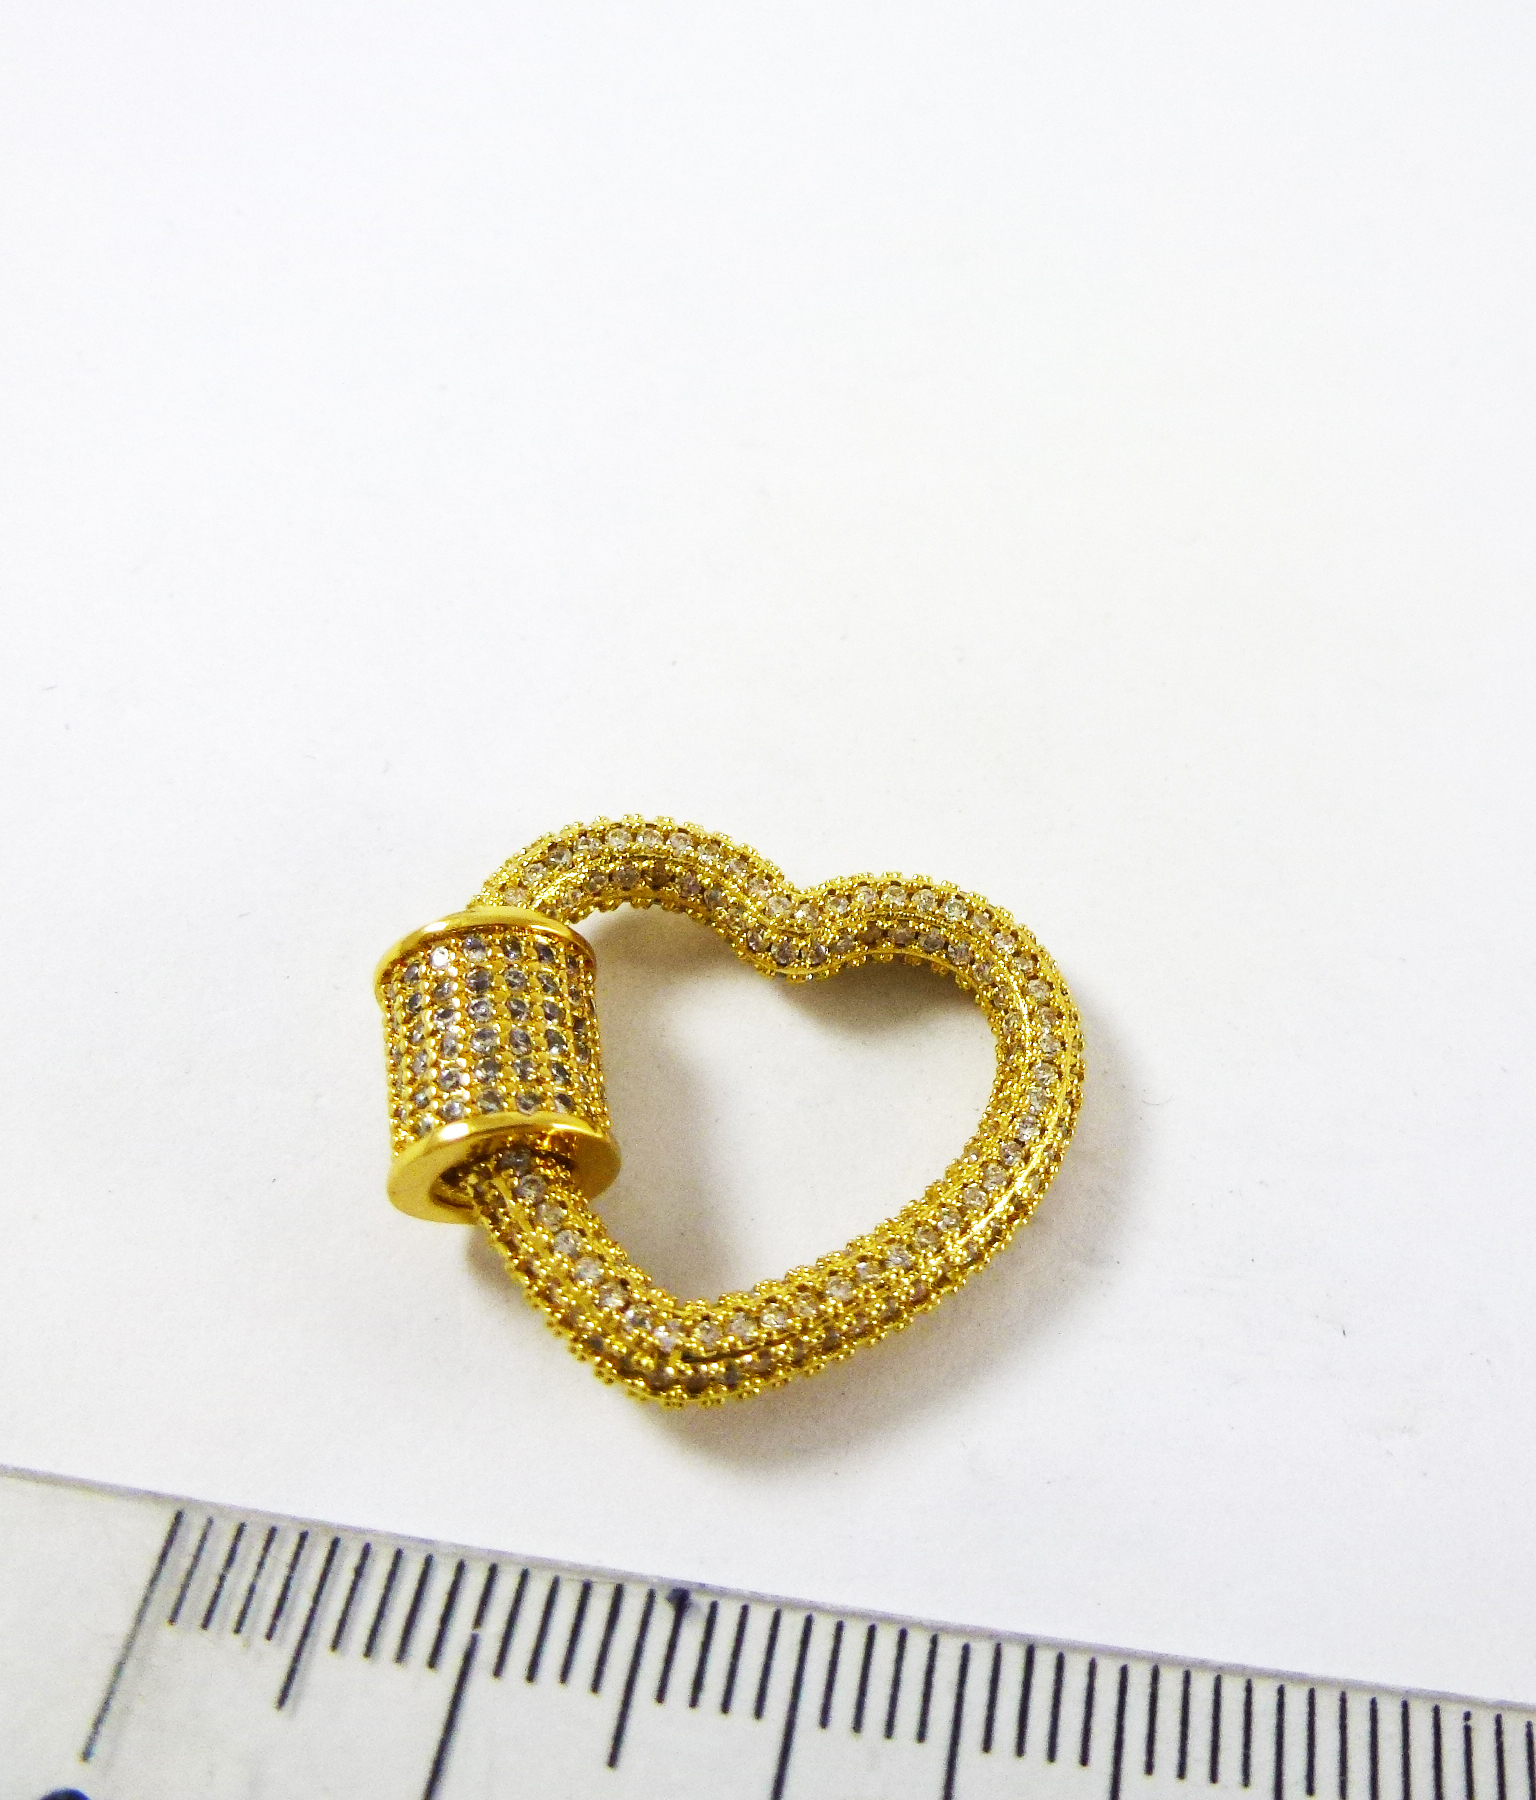 23mm銅鍍金色愛心鑲鑽螺旋扣